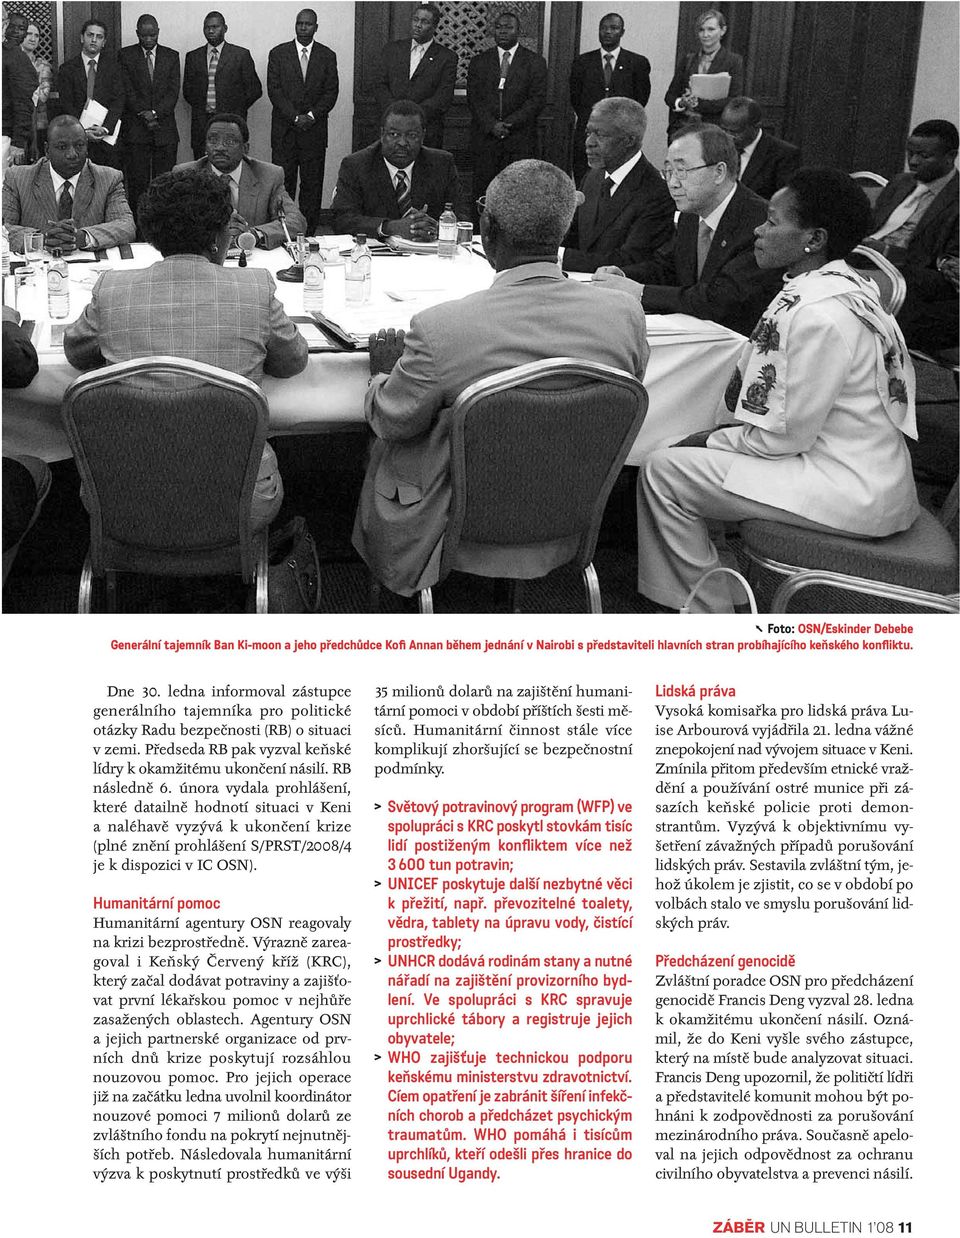 února vydala prohlášení, které datailně hodnotí situaci v Keni a naléhavě vyzývá k ukončení krize (plné znění prohlášení S/PRST/2008/4 je k dispozici v IC OSN).